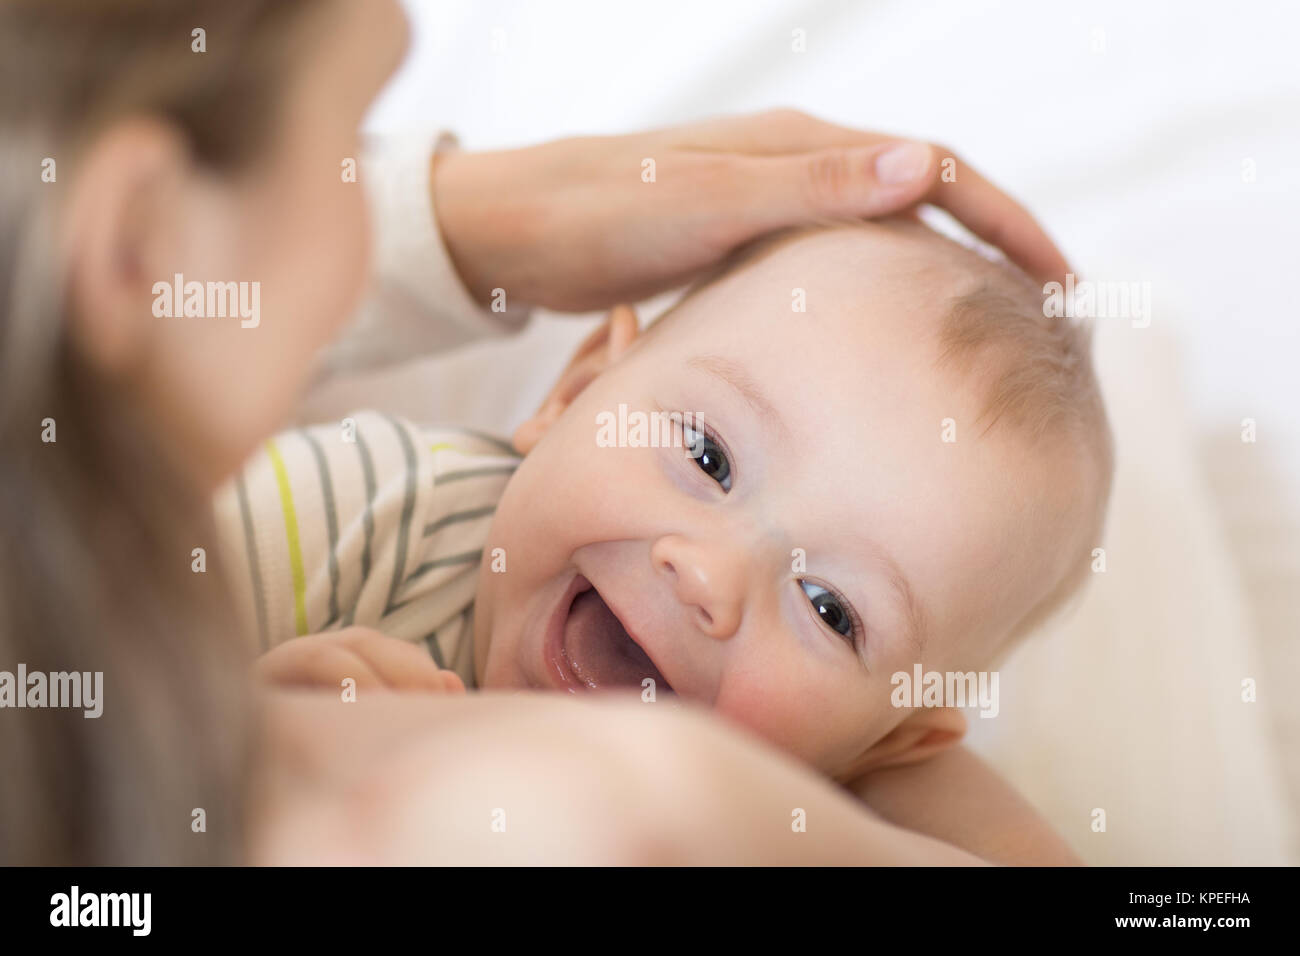 Bebé lactancia materna. Madre sosteniendo a su hijo recién nacido. Chico riendo y mirando a la cámara. Foto de stock